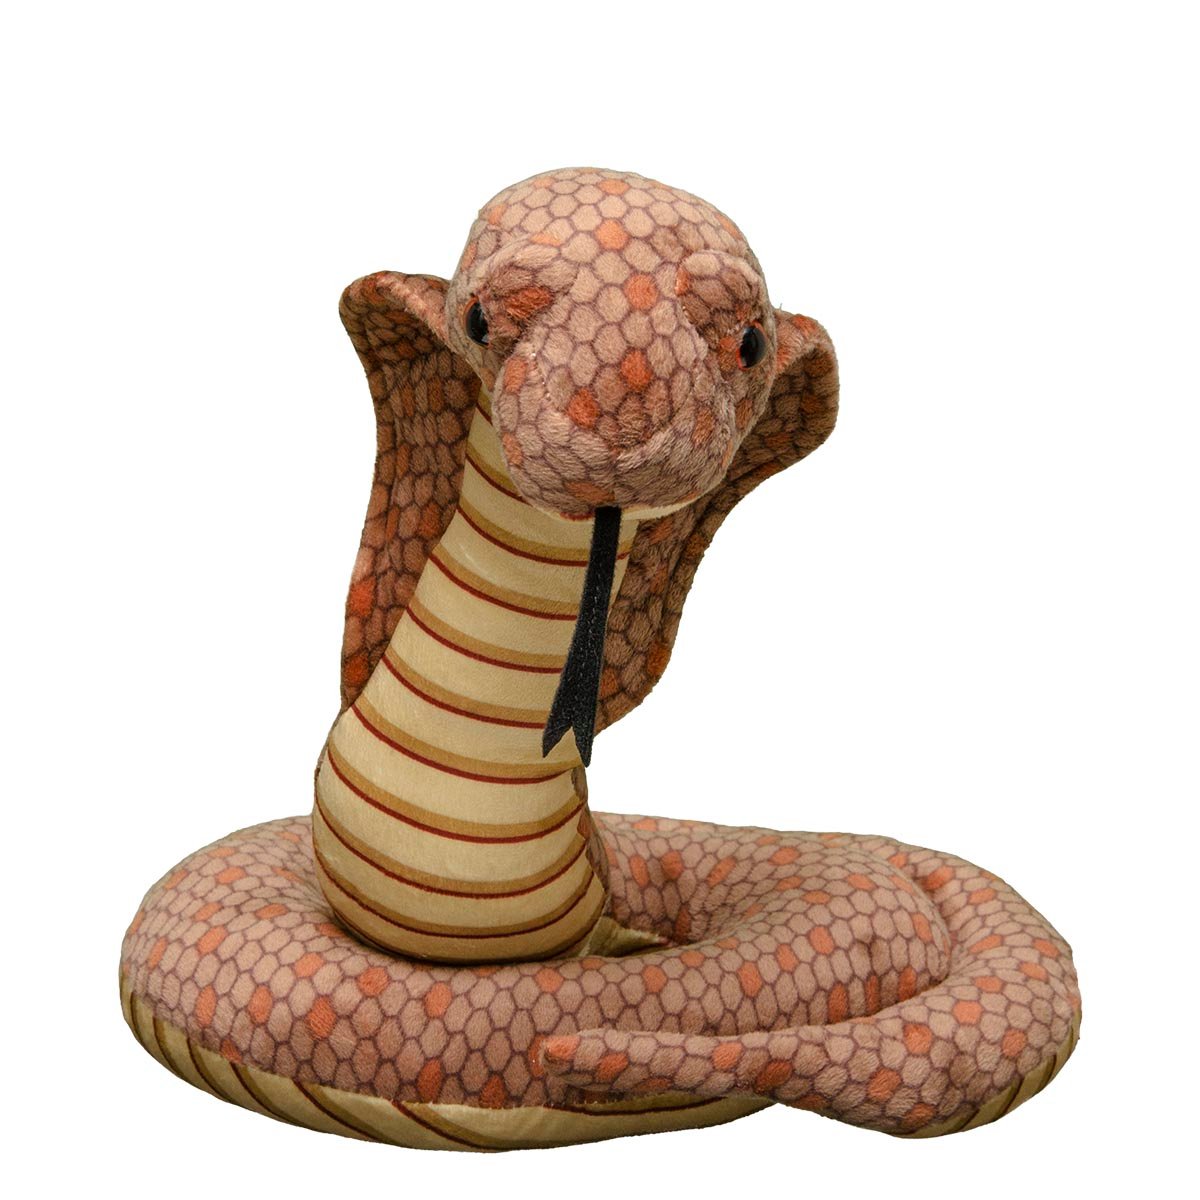 Adopt a Cobra  Symbolic Adoptions from WWF